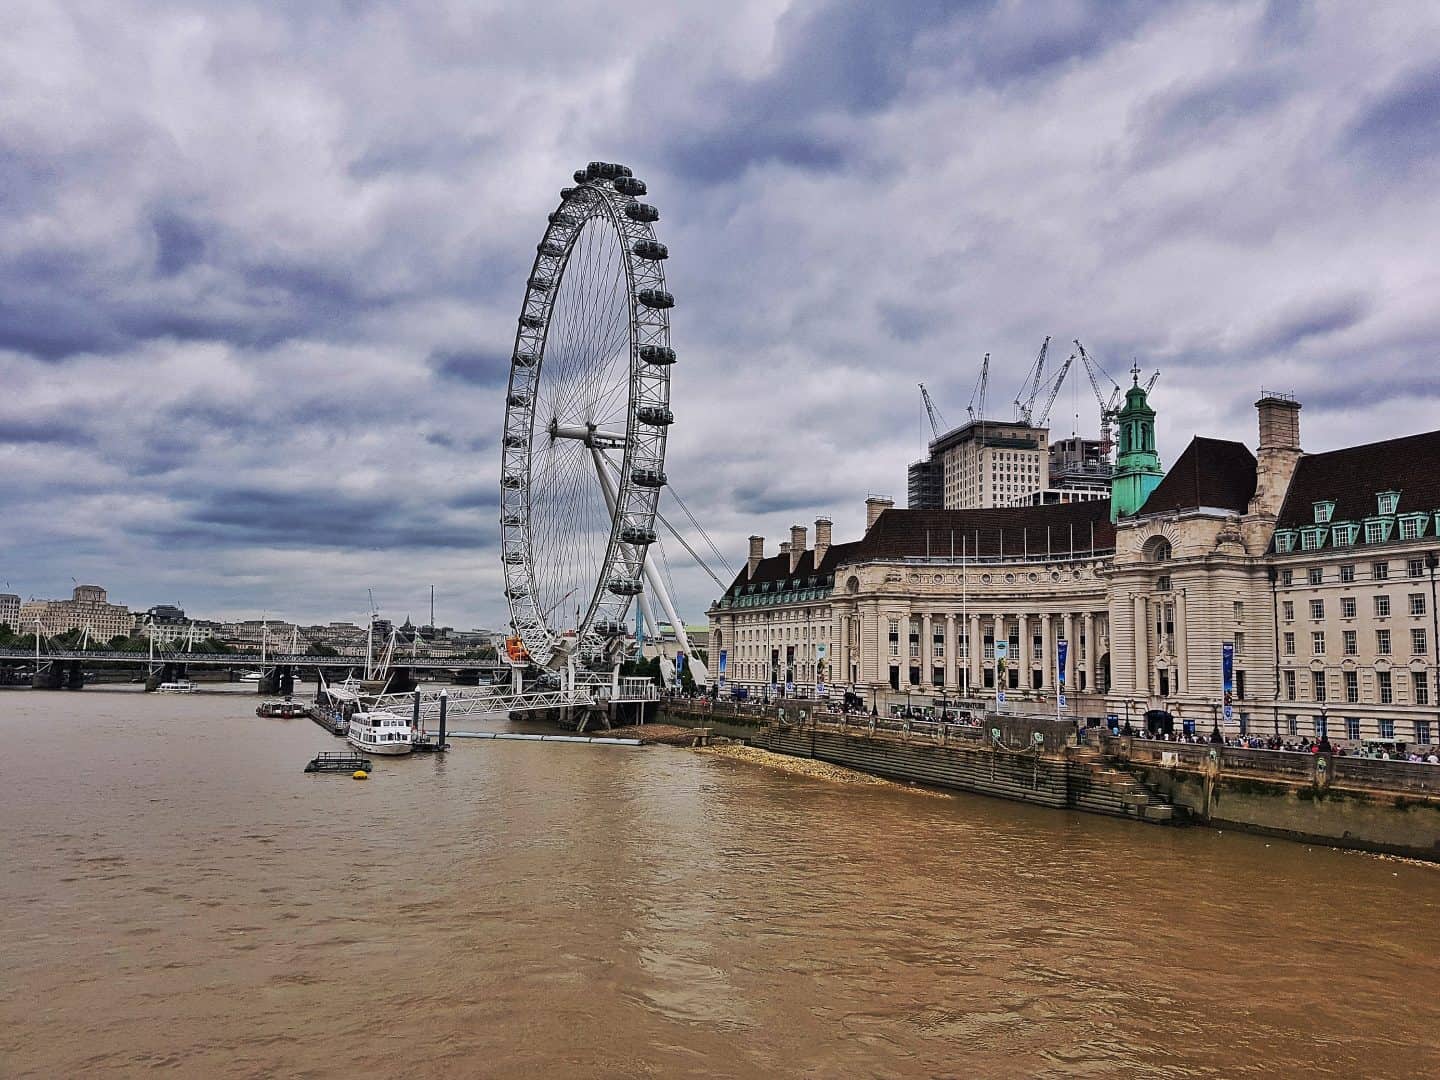 National Express London trip London Eye across the Thames